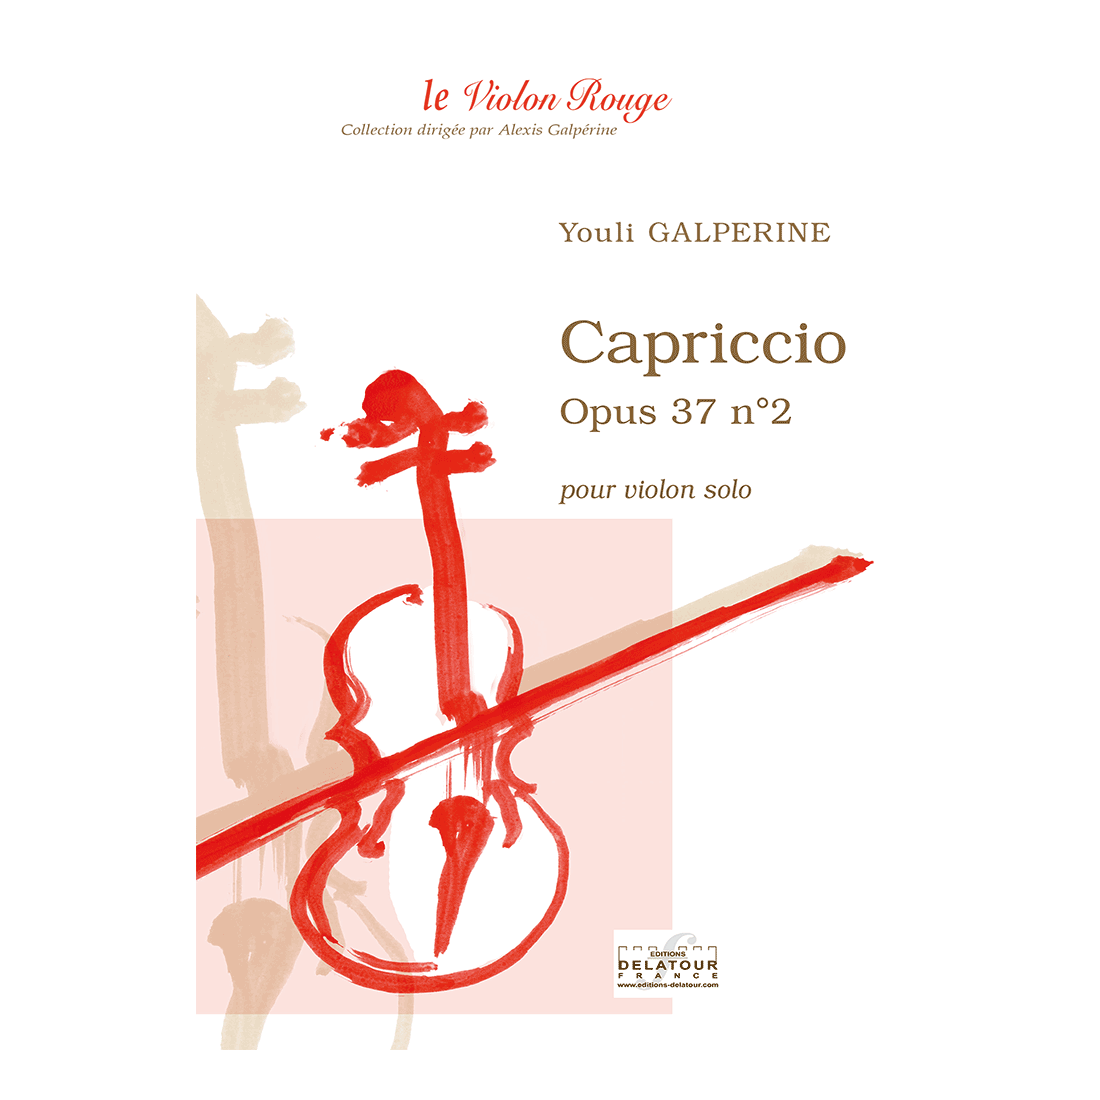 Capriccio - Opus 37 n°2 pour violon solo